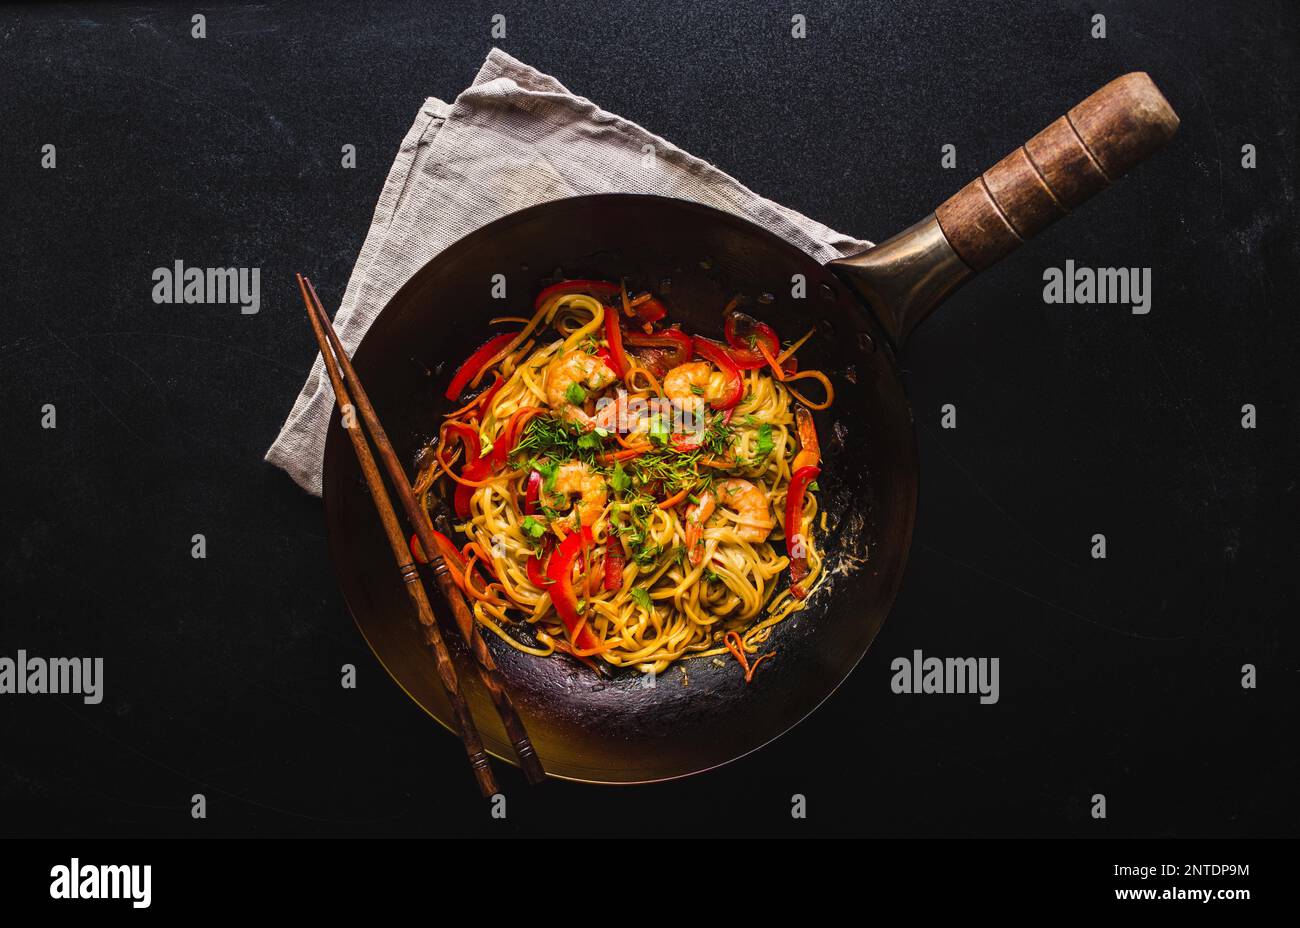 Remuez les nouilles dans le wok chinois traditionnel, les baguettes.  Nouilles asiatiques avec légumes, crevettes. Nouilles wok, dîner/déjeuner  chinois. Noir foncé Photo Stock - Alamy